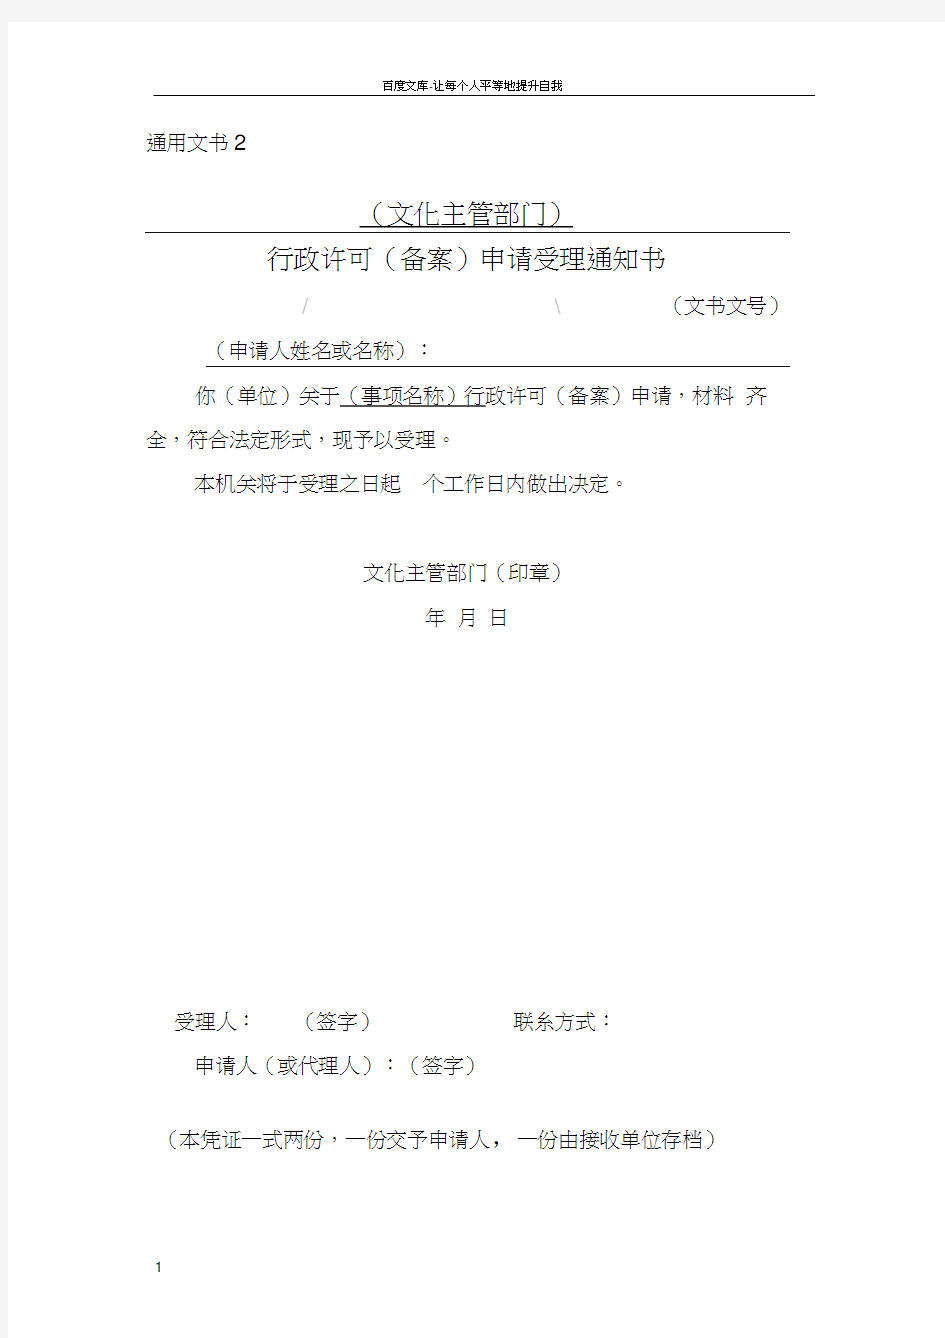 行政许可申请材料收件凭证中国文化市场网